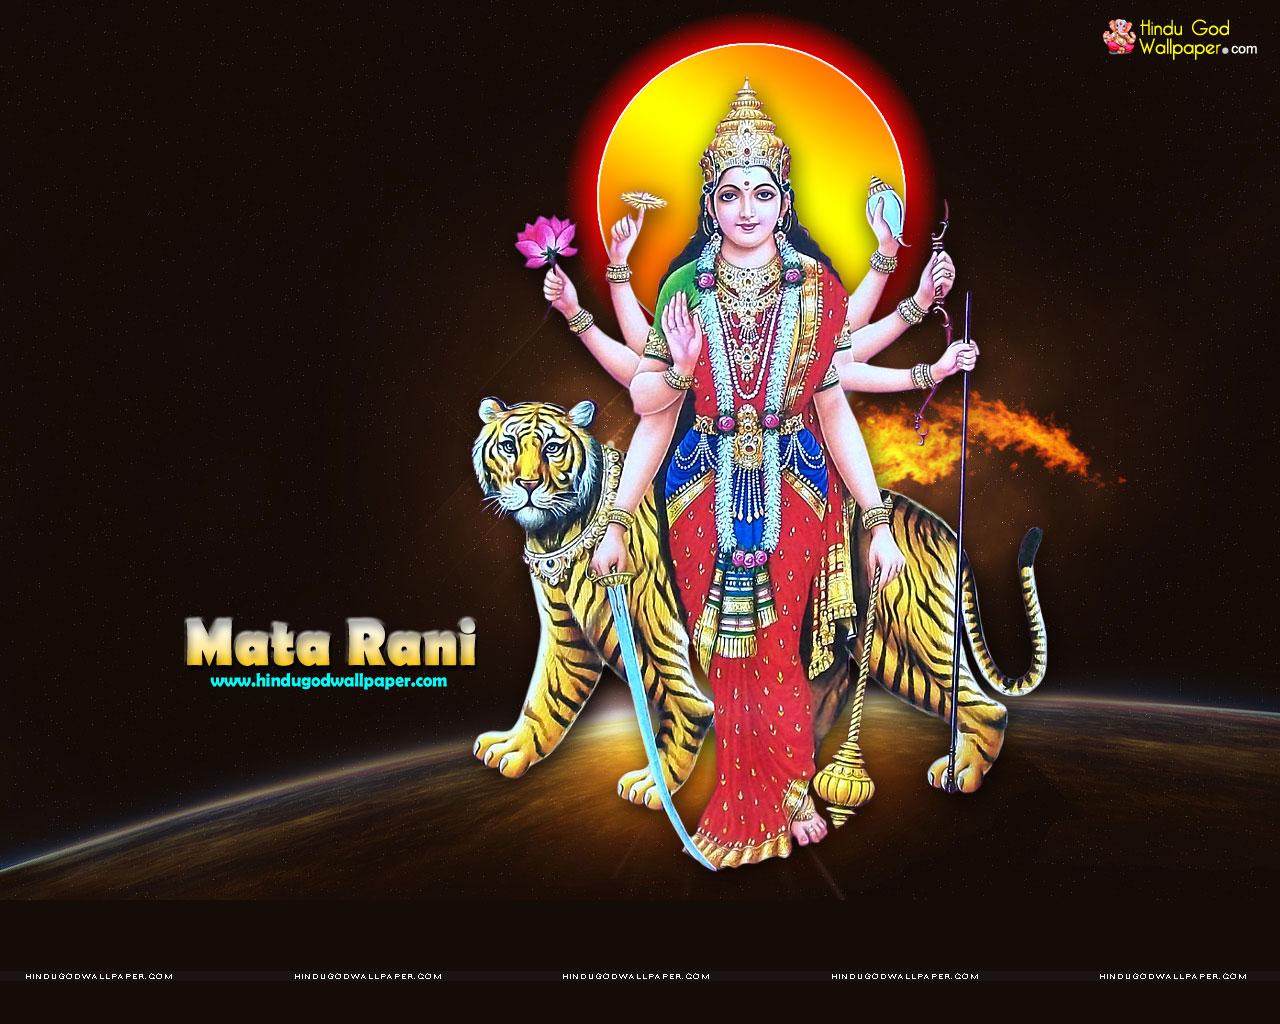 2020 Maa Durga Images, Mata Rani Images HD Download